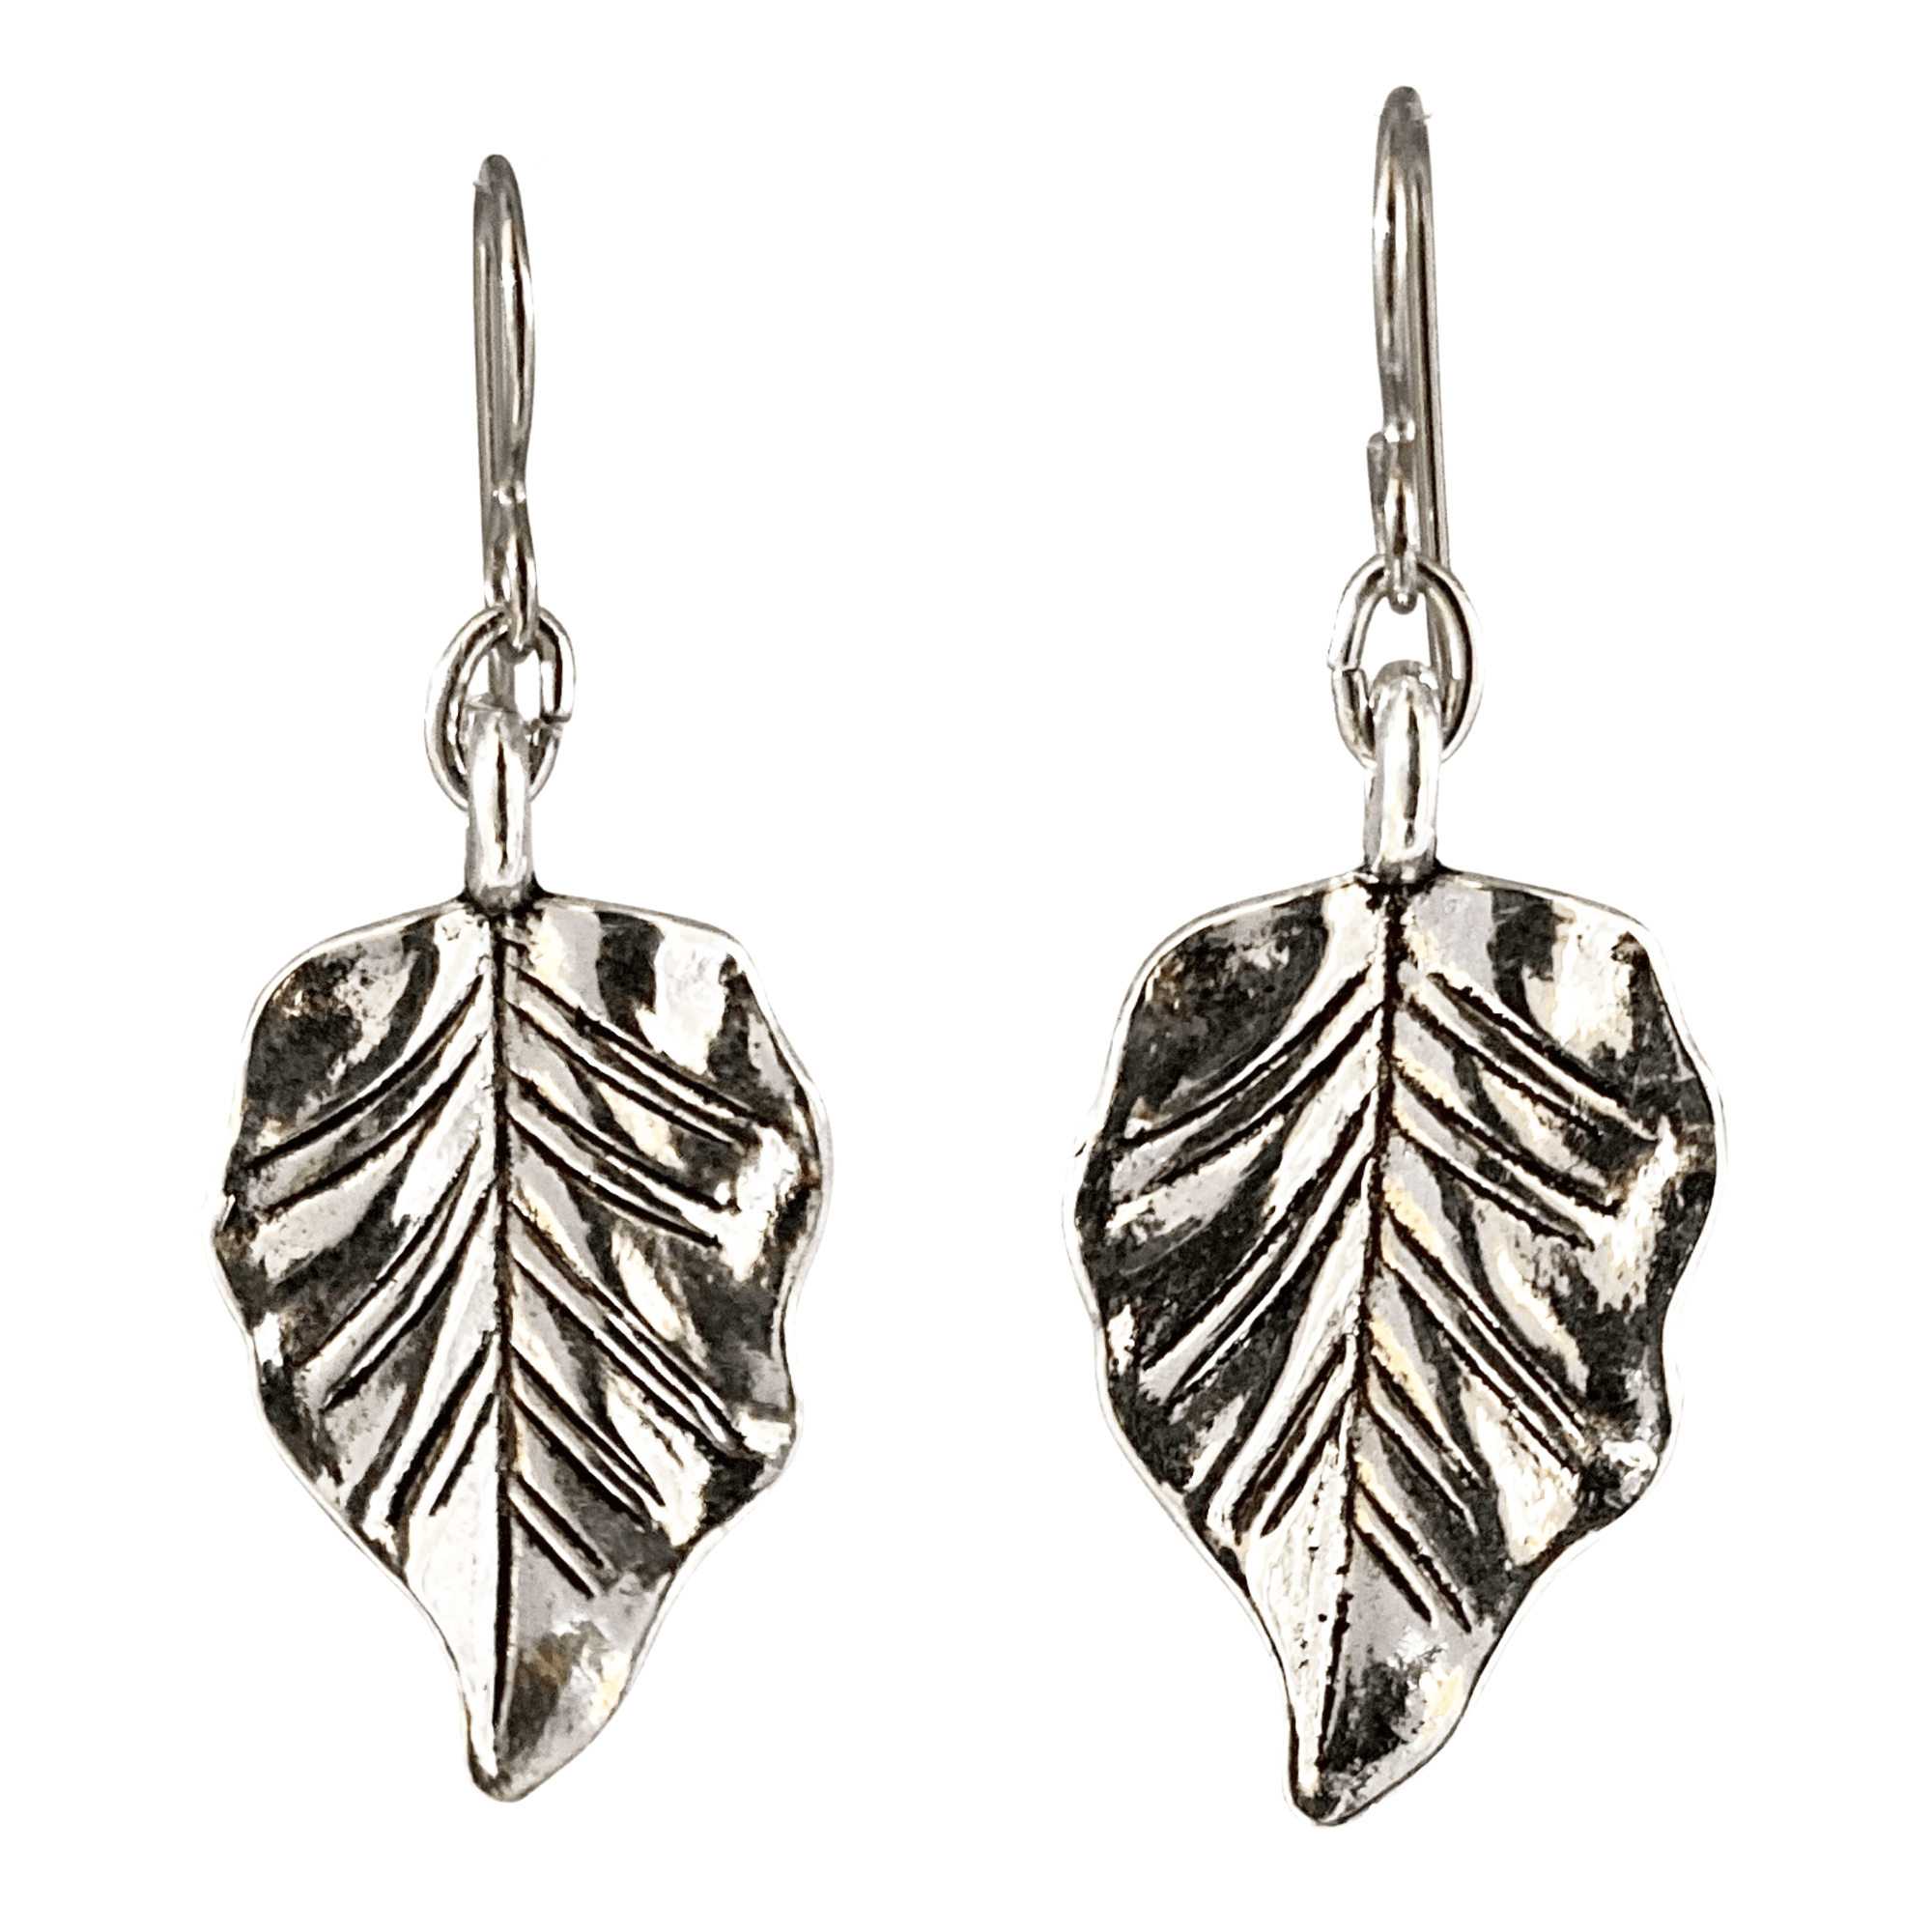 Silver Pear Shape Leaf Earrings for Sensitive Ears-Earrings- Creative Jewelry by Marcia